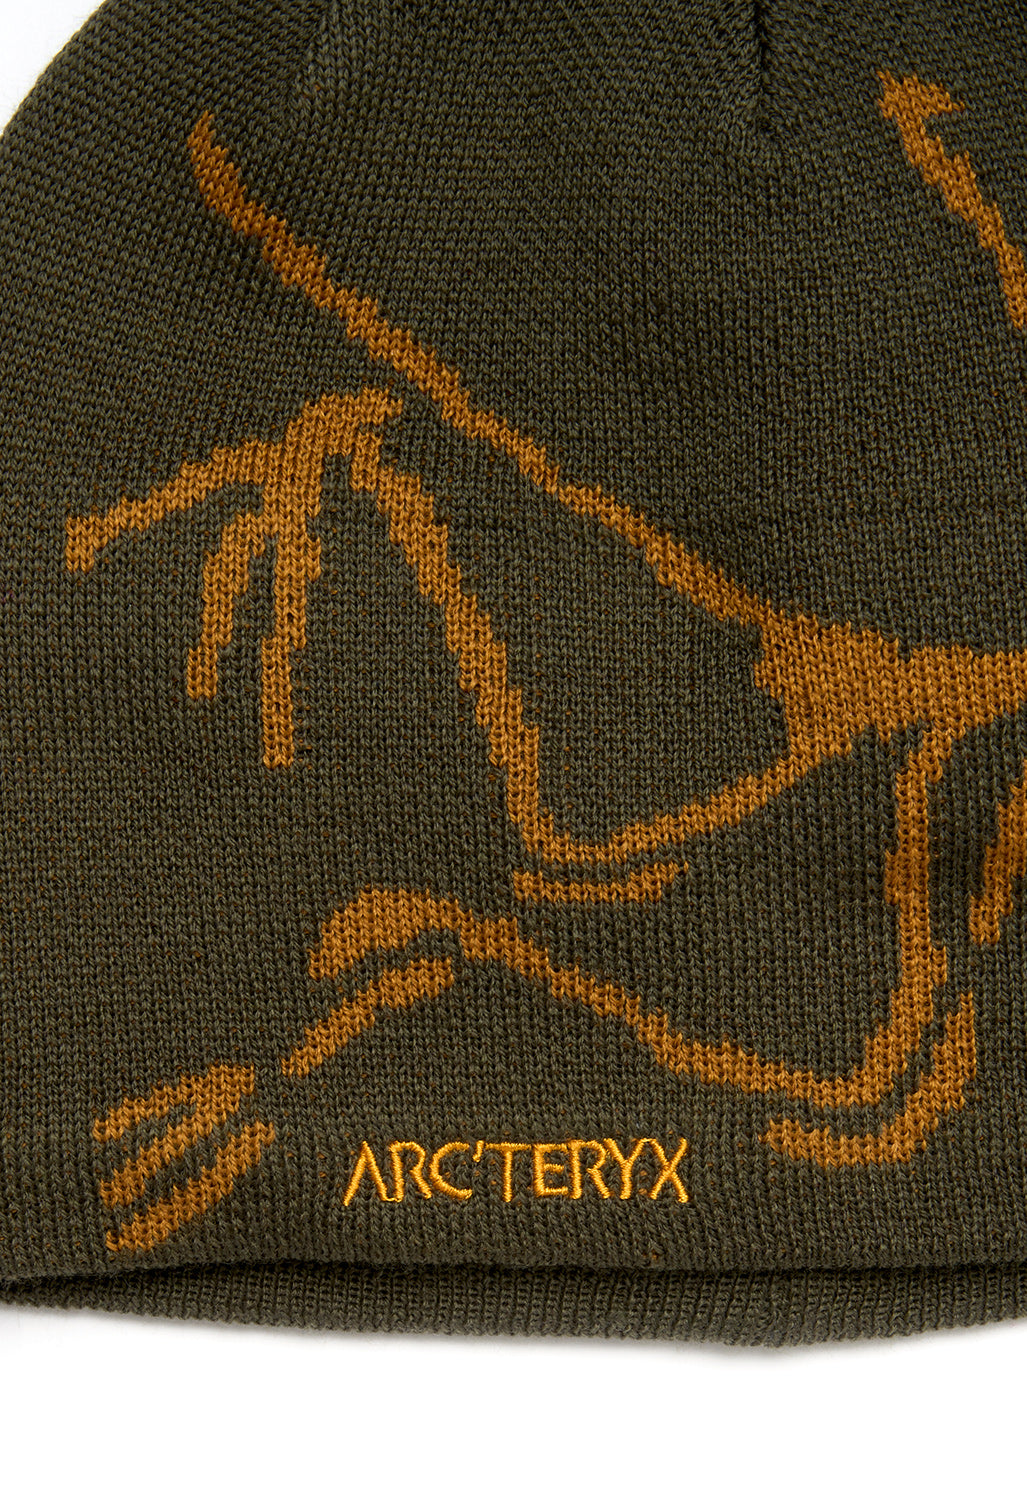 Arc'teryx Bird Head Toque - Tatsu / Yukon